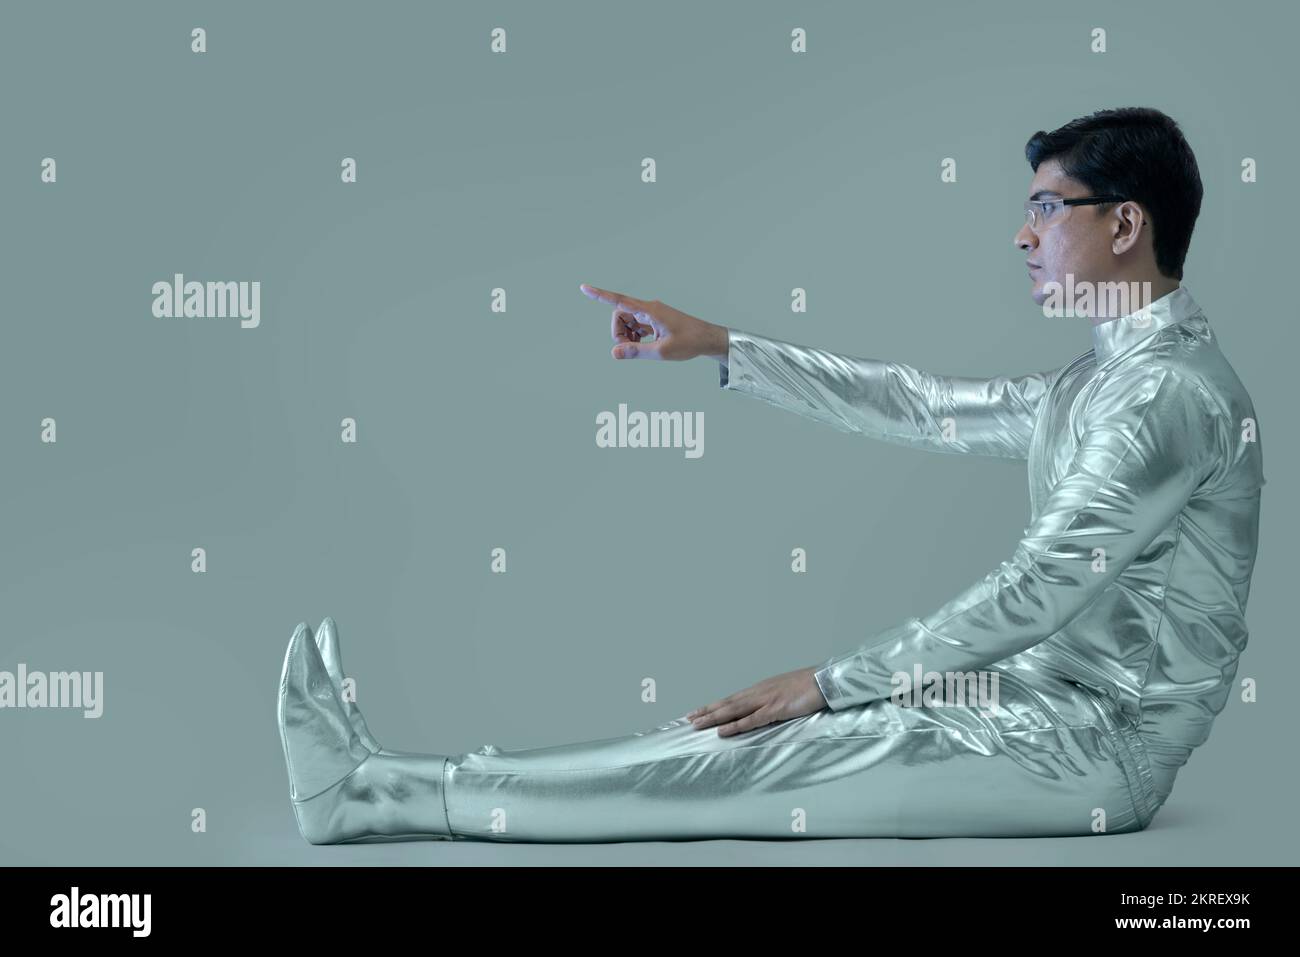 Seitenansicht eines Mannes in silbernem Kleid, der mit dem rechten Arm sitzt und auf einen grauen Hintergrund zeigt, zukunftsweisendes Technologiekonzept. Stockfoto